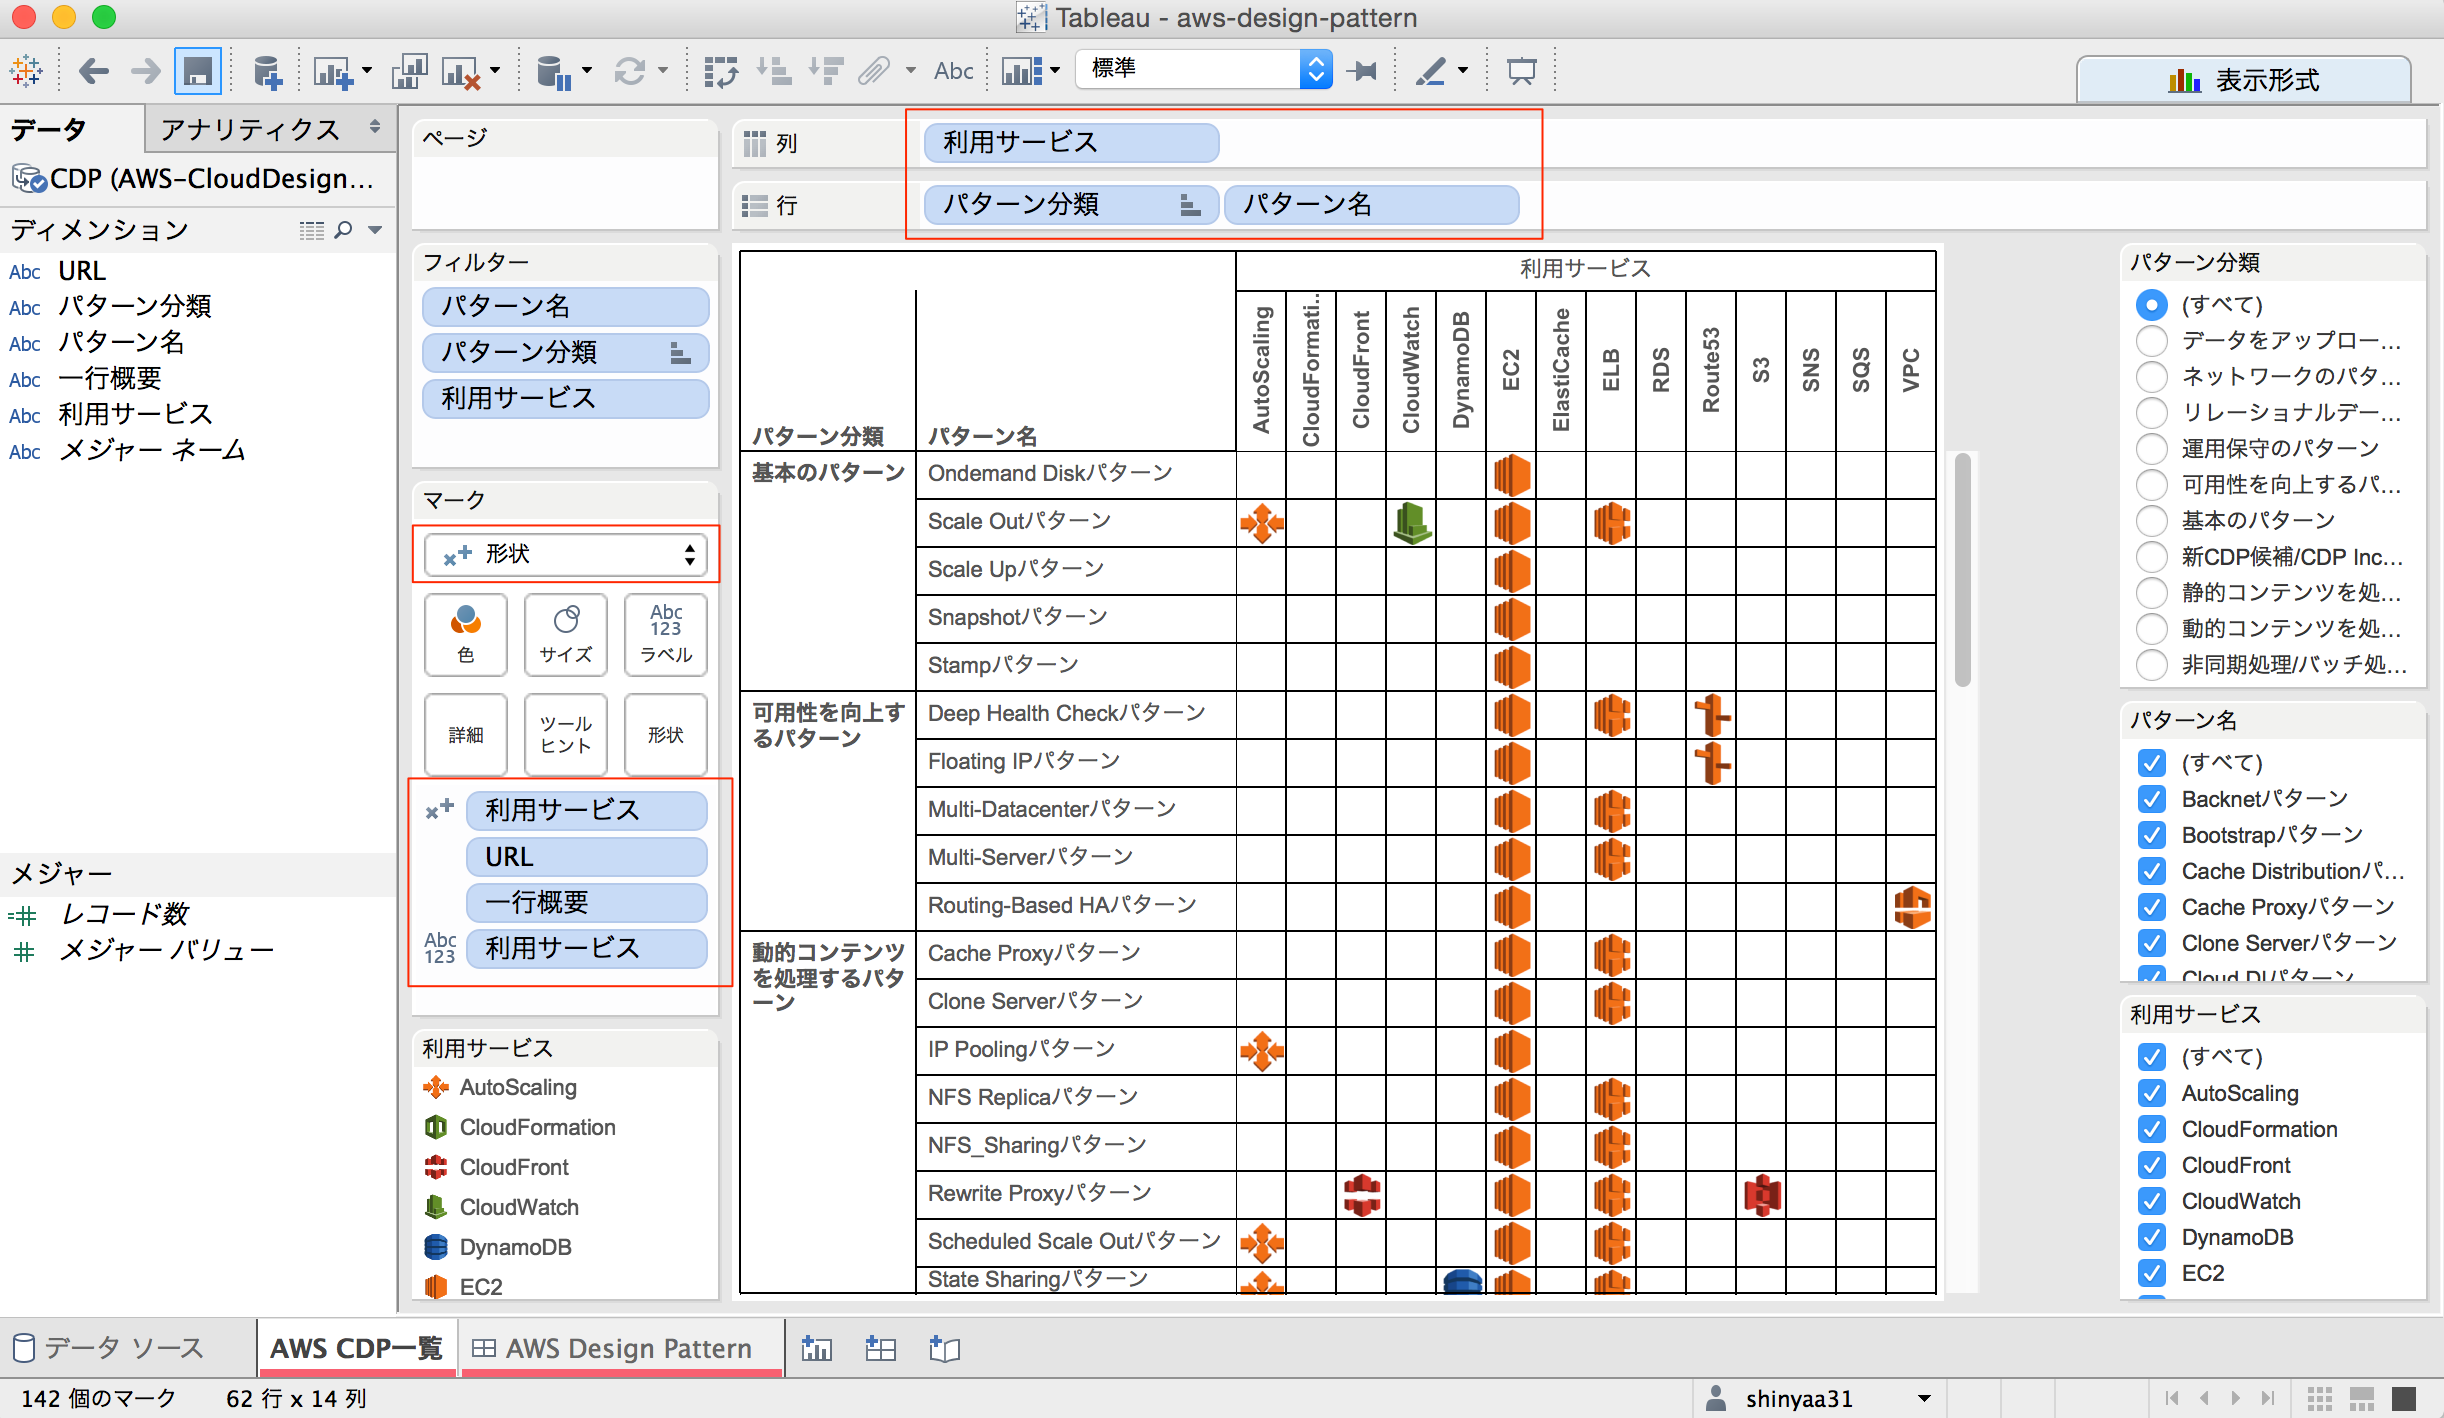 AWSクラウドデザインパターン』のサービス対応表をTableauで可視化して 